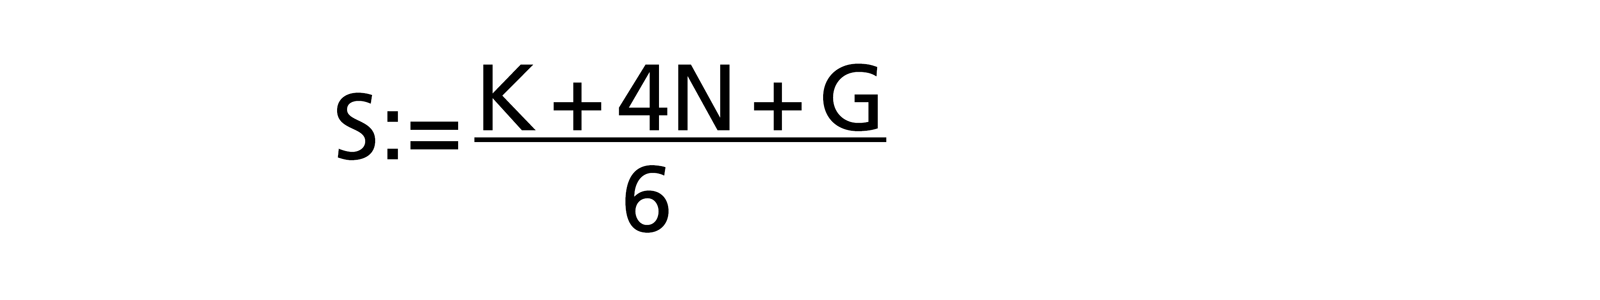 Estimation formula for the Beta Distribution: S:= (K + 4N + G) / 6